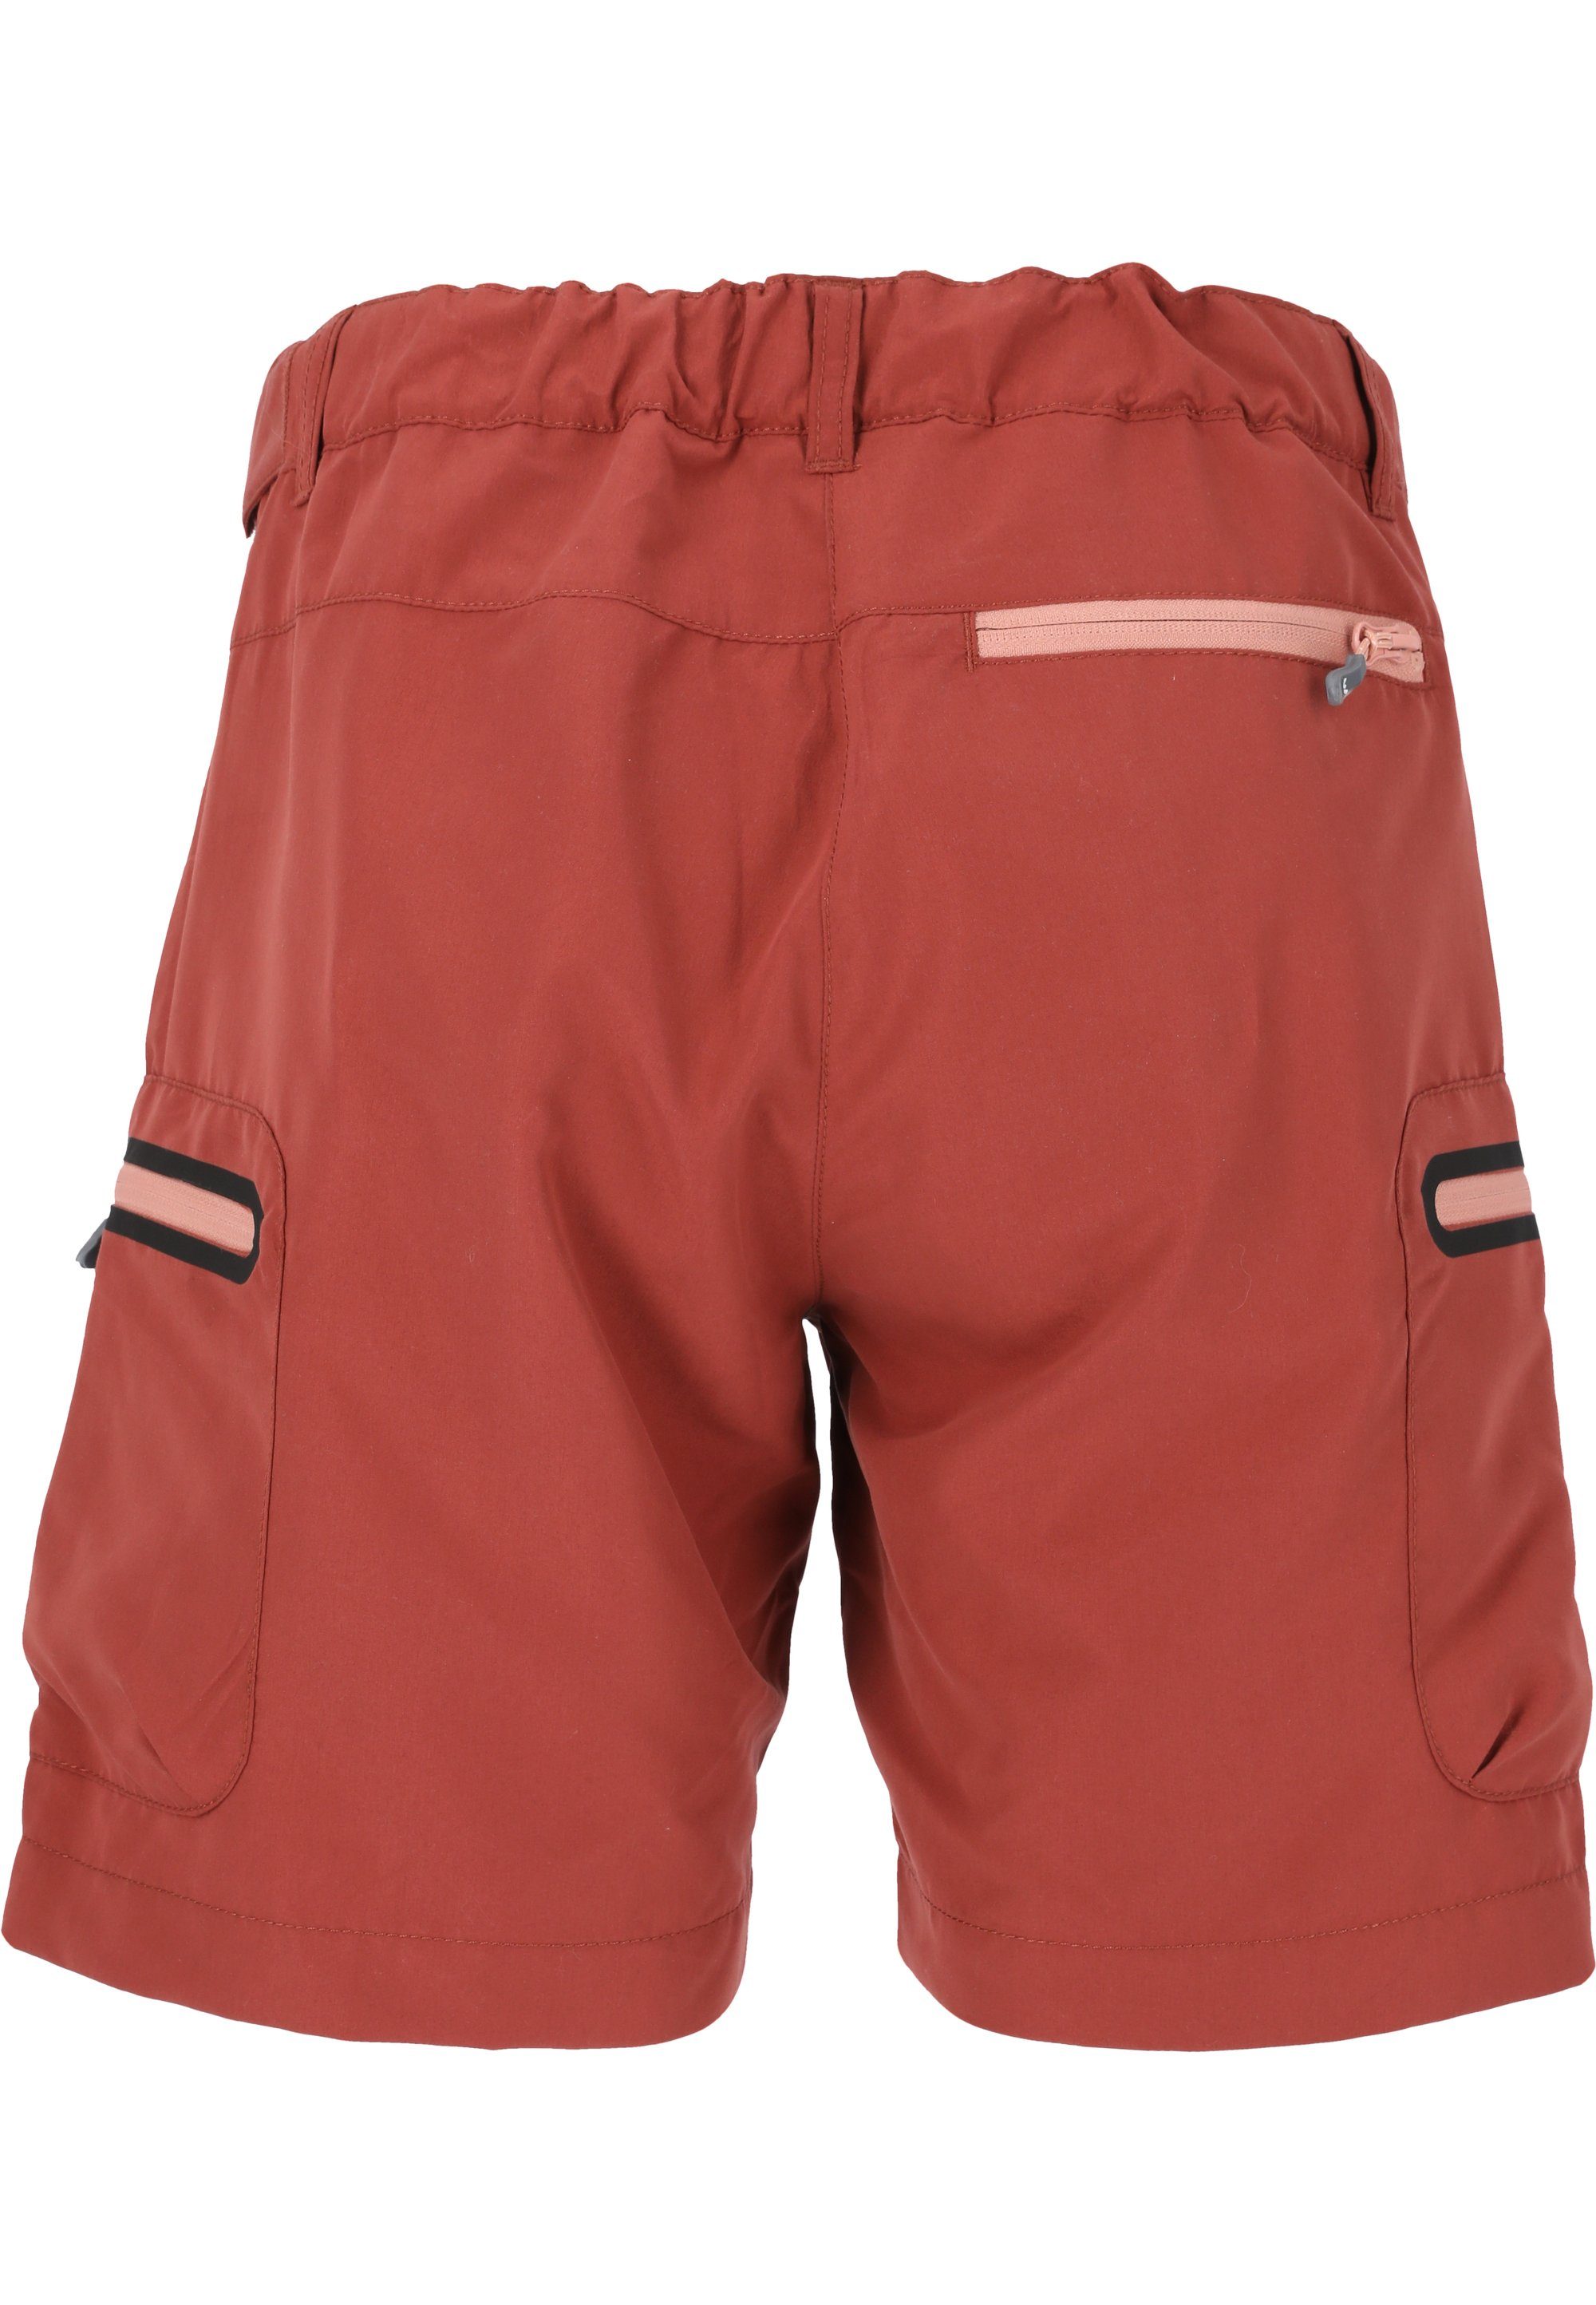 WHISTLER Shorts Stian mit praktischen Reißverschlusstaschen maroon